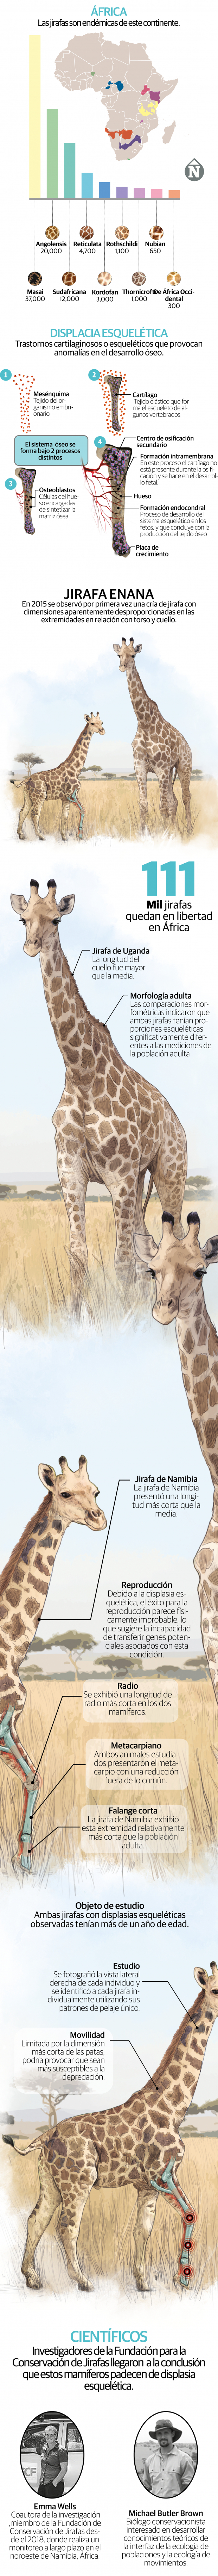 Dos jirafas enanas desconciertan a la comunidad científica